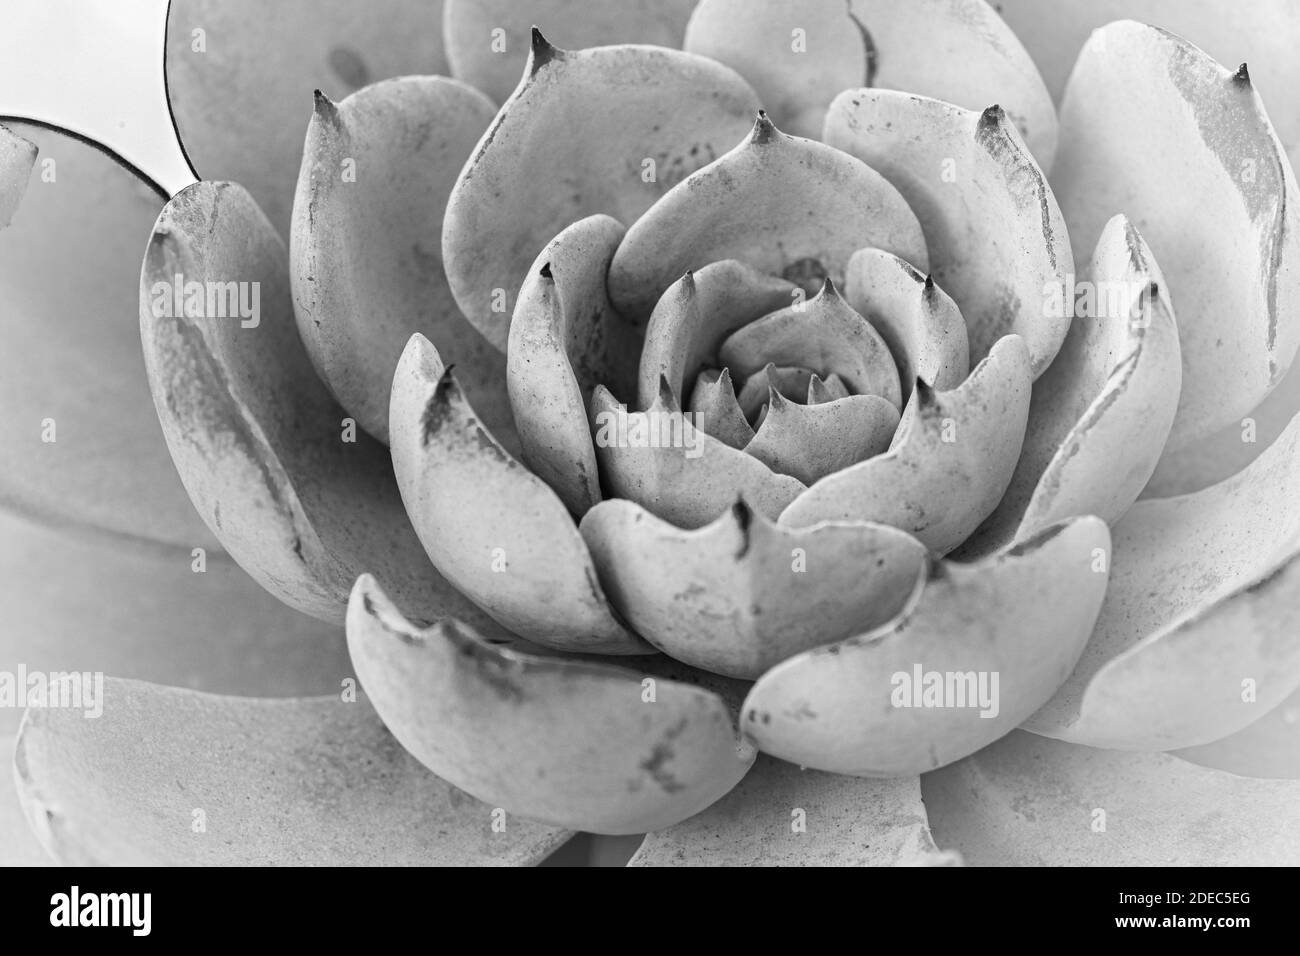 Gros plan en niveaux de gris d'une fleur succulente Banque D'Images